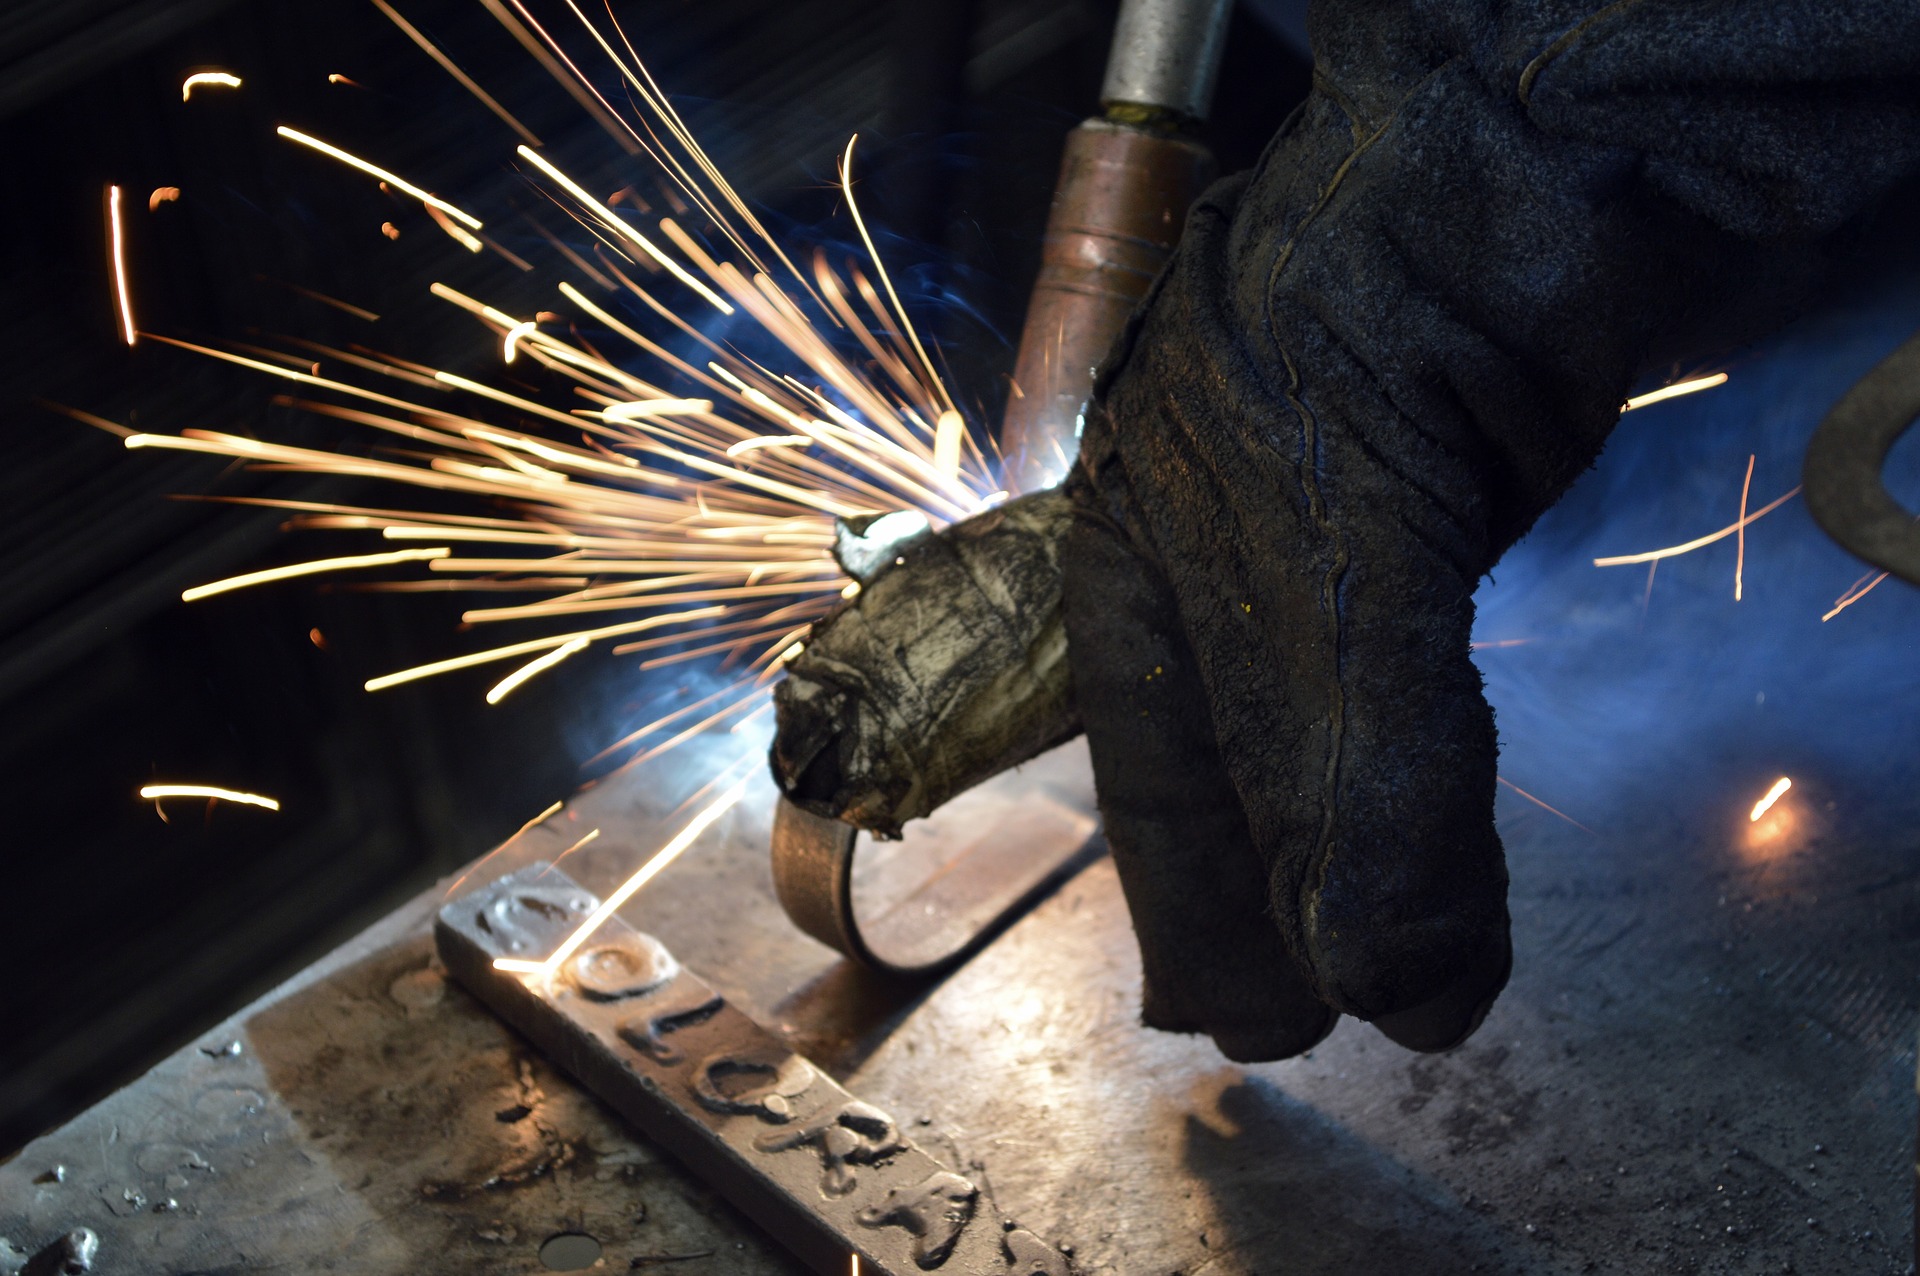 Absolwenci metalurgii potrzebowali średnio pół miesiąca, żeby znaleźć pracę na etacie (fot. Shutterstock)